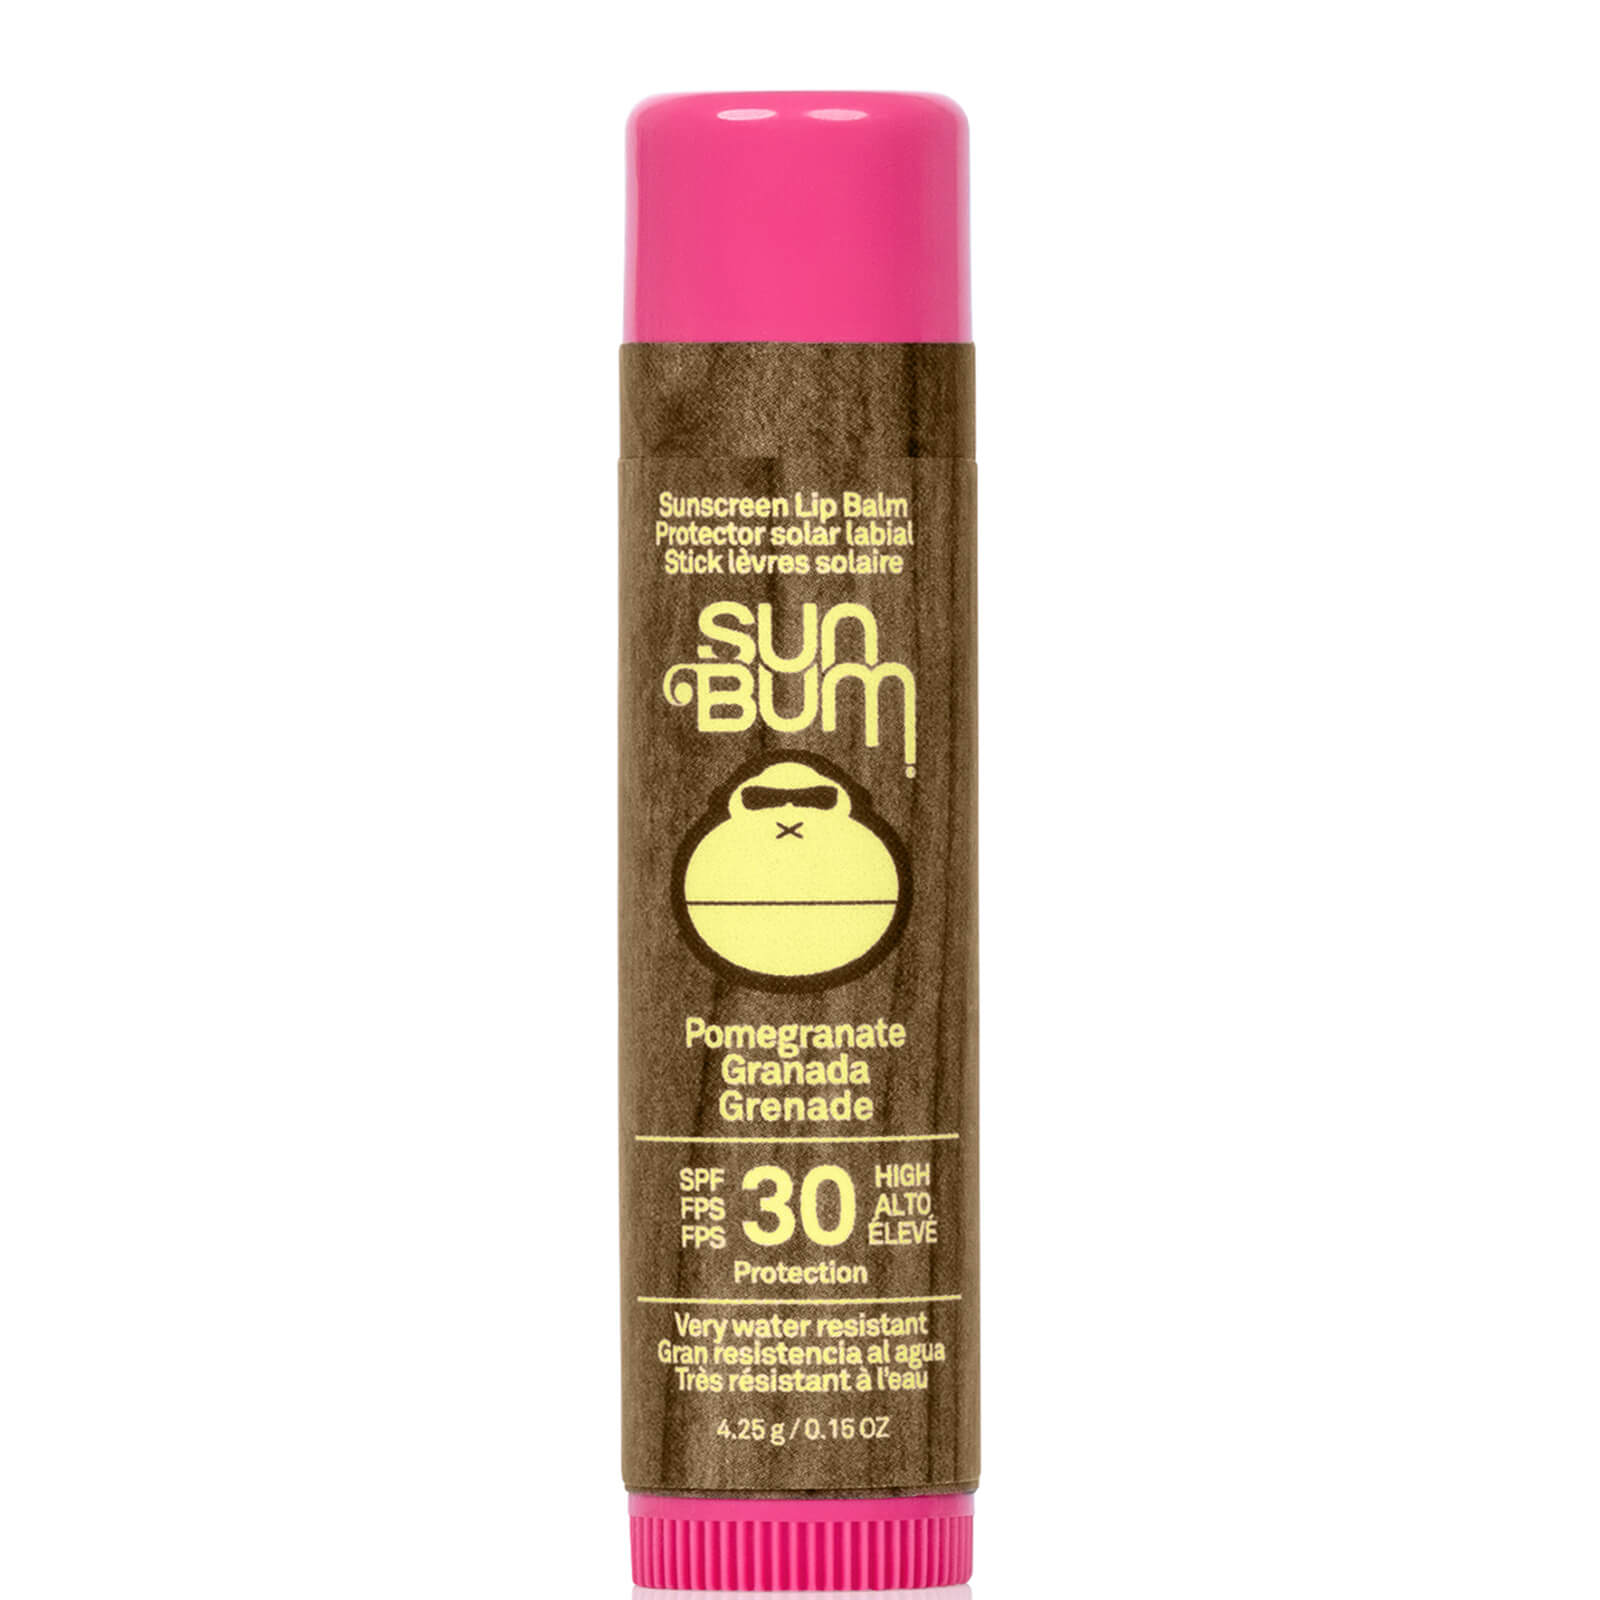 Sun Bum Original SPF30 Lip Balm 4.25g (Various Options) - Pomegranet